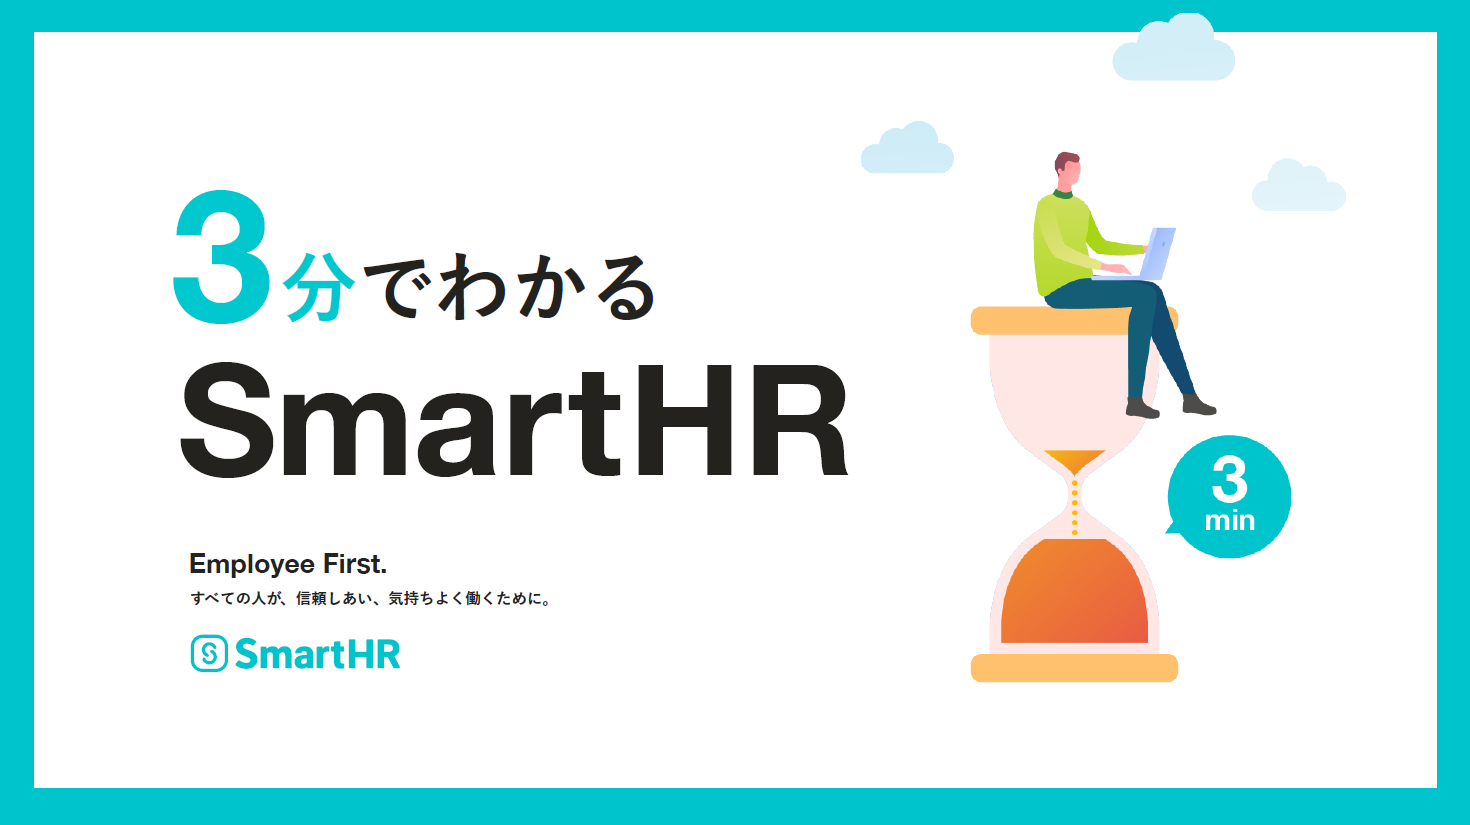 オンラインで職場の手続きを完結 SmartHR サービス資料